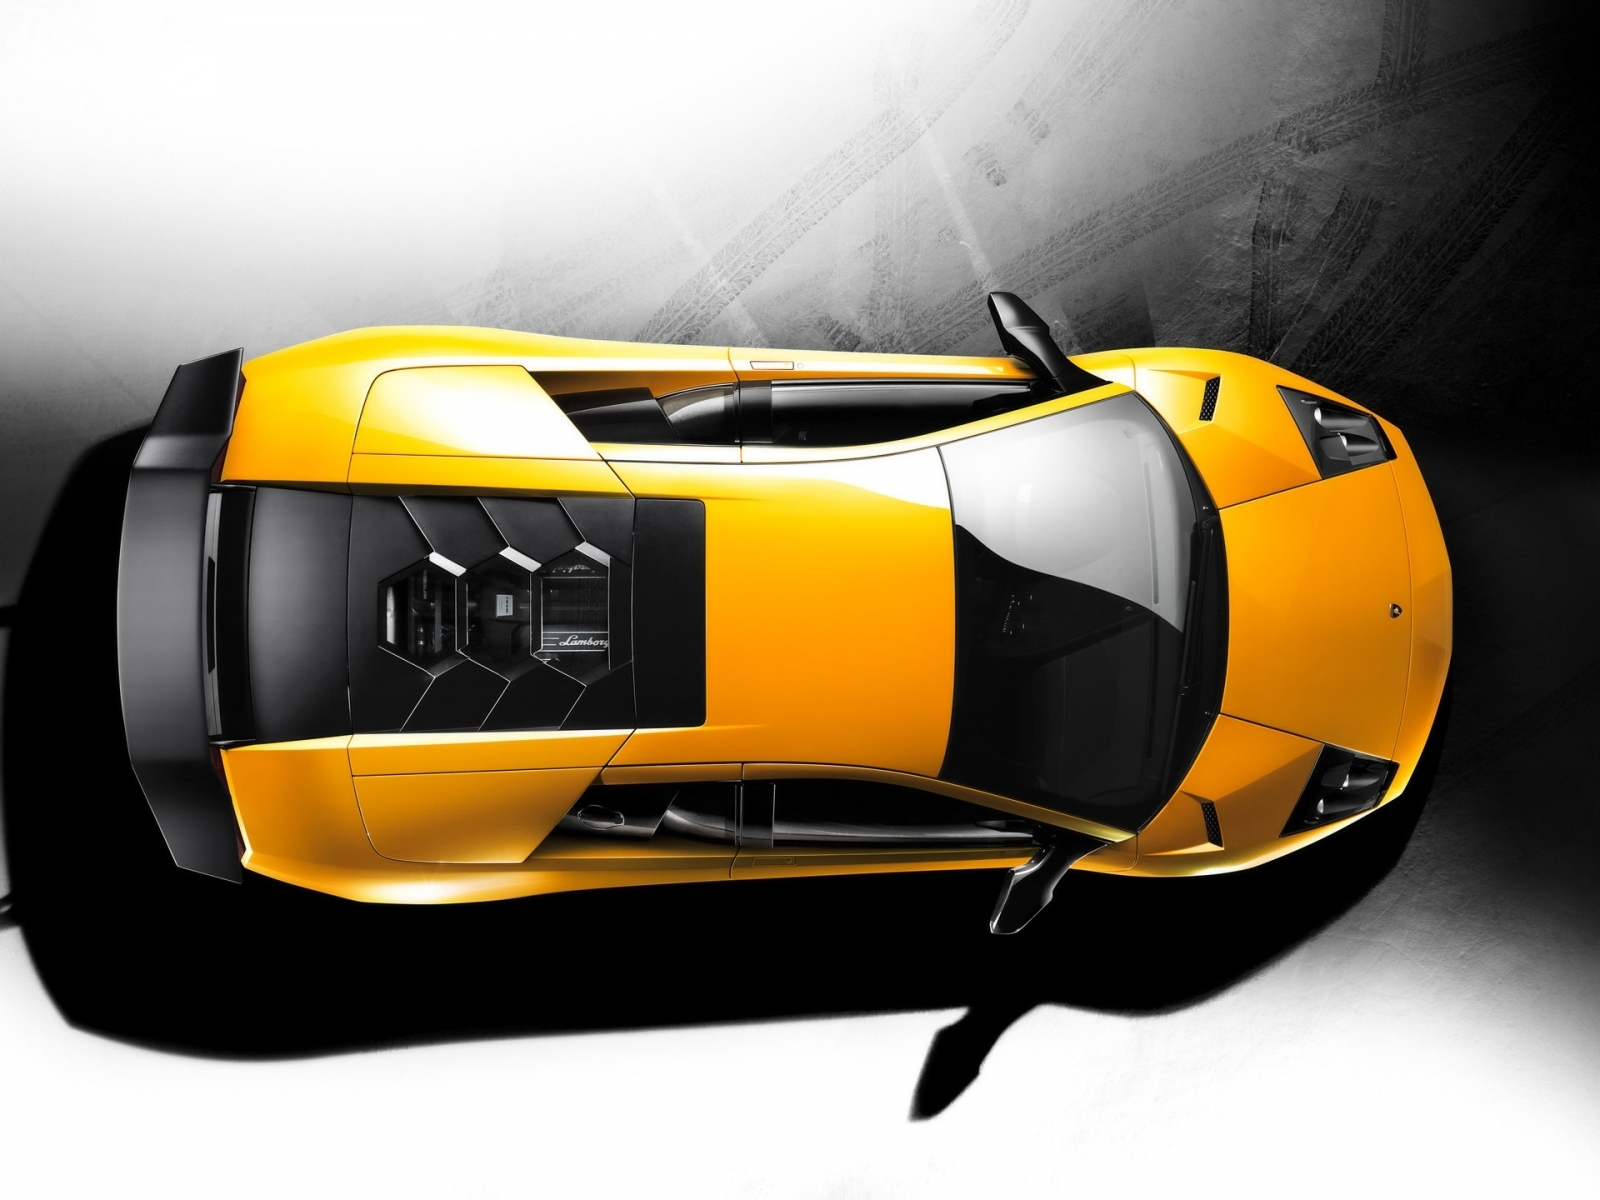 Скачать картинку Транспорт, Ламборджини (Lamborghini), Машины в телефон бесплатно.